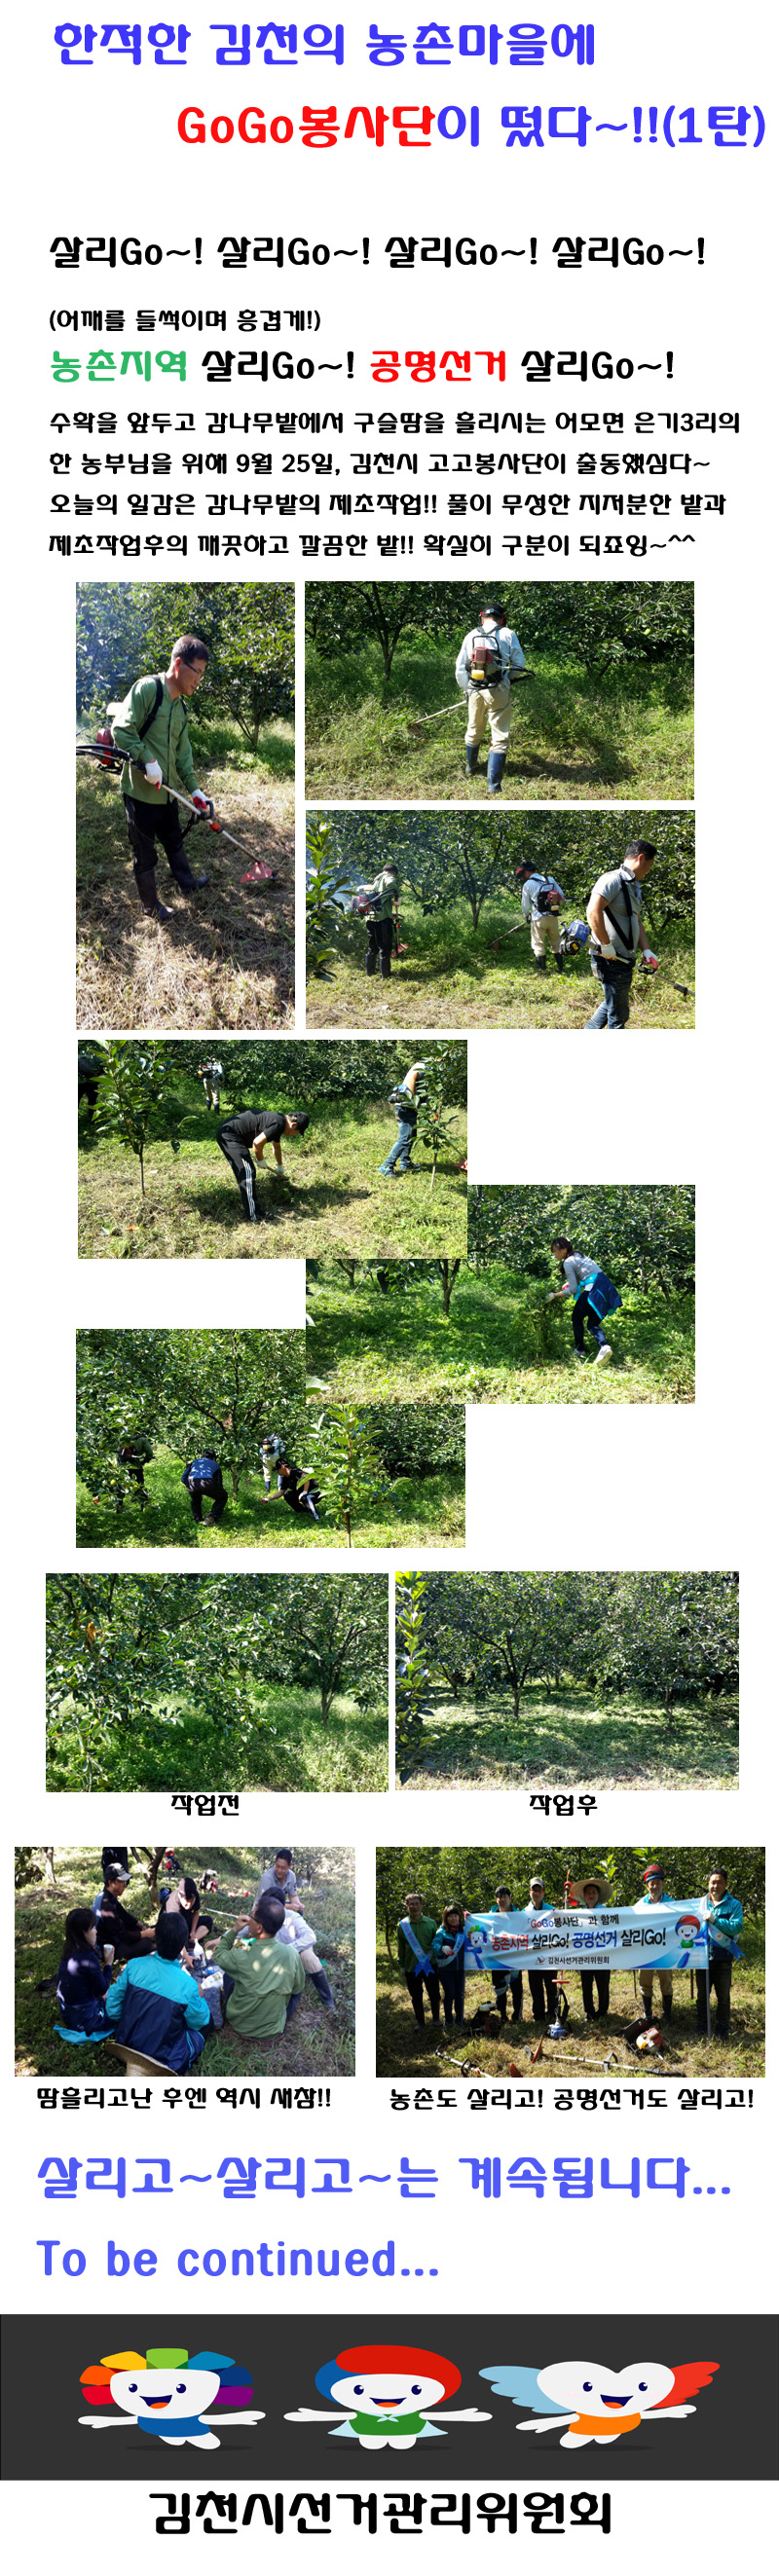 9월 25일 고고봉사단이 김천시 어모면 한 농가의 감나무밭에서 풀베기 봉사를 한 사진입니다